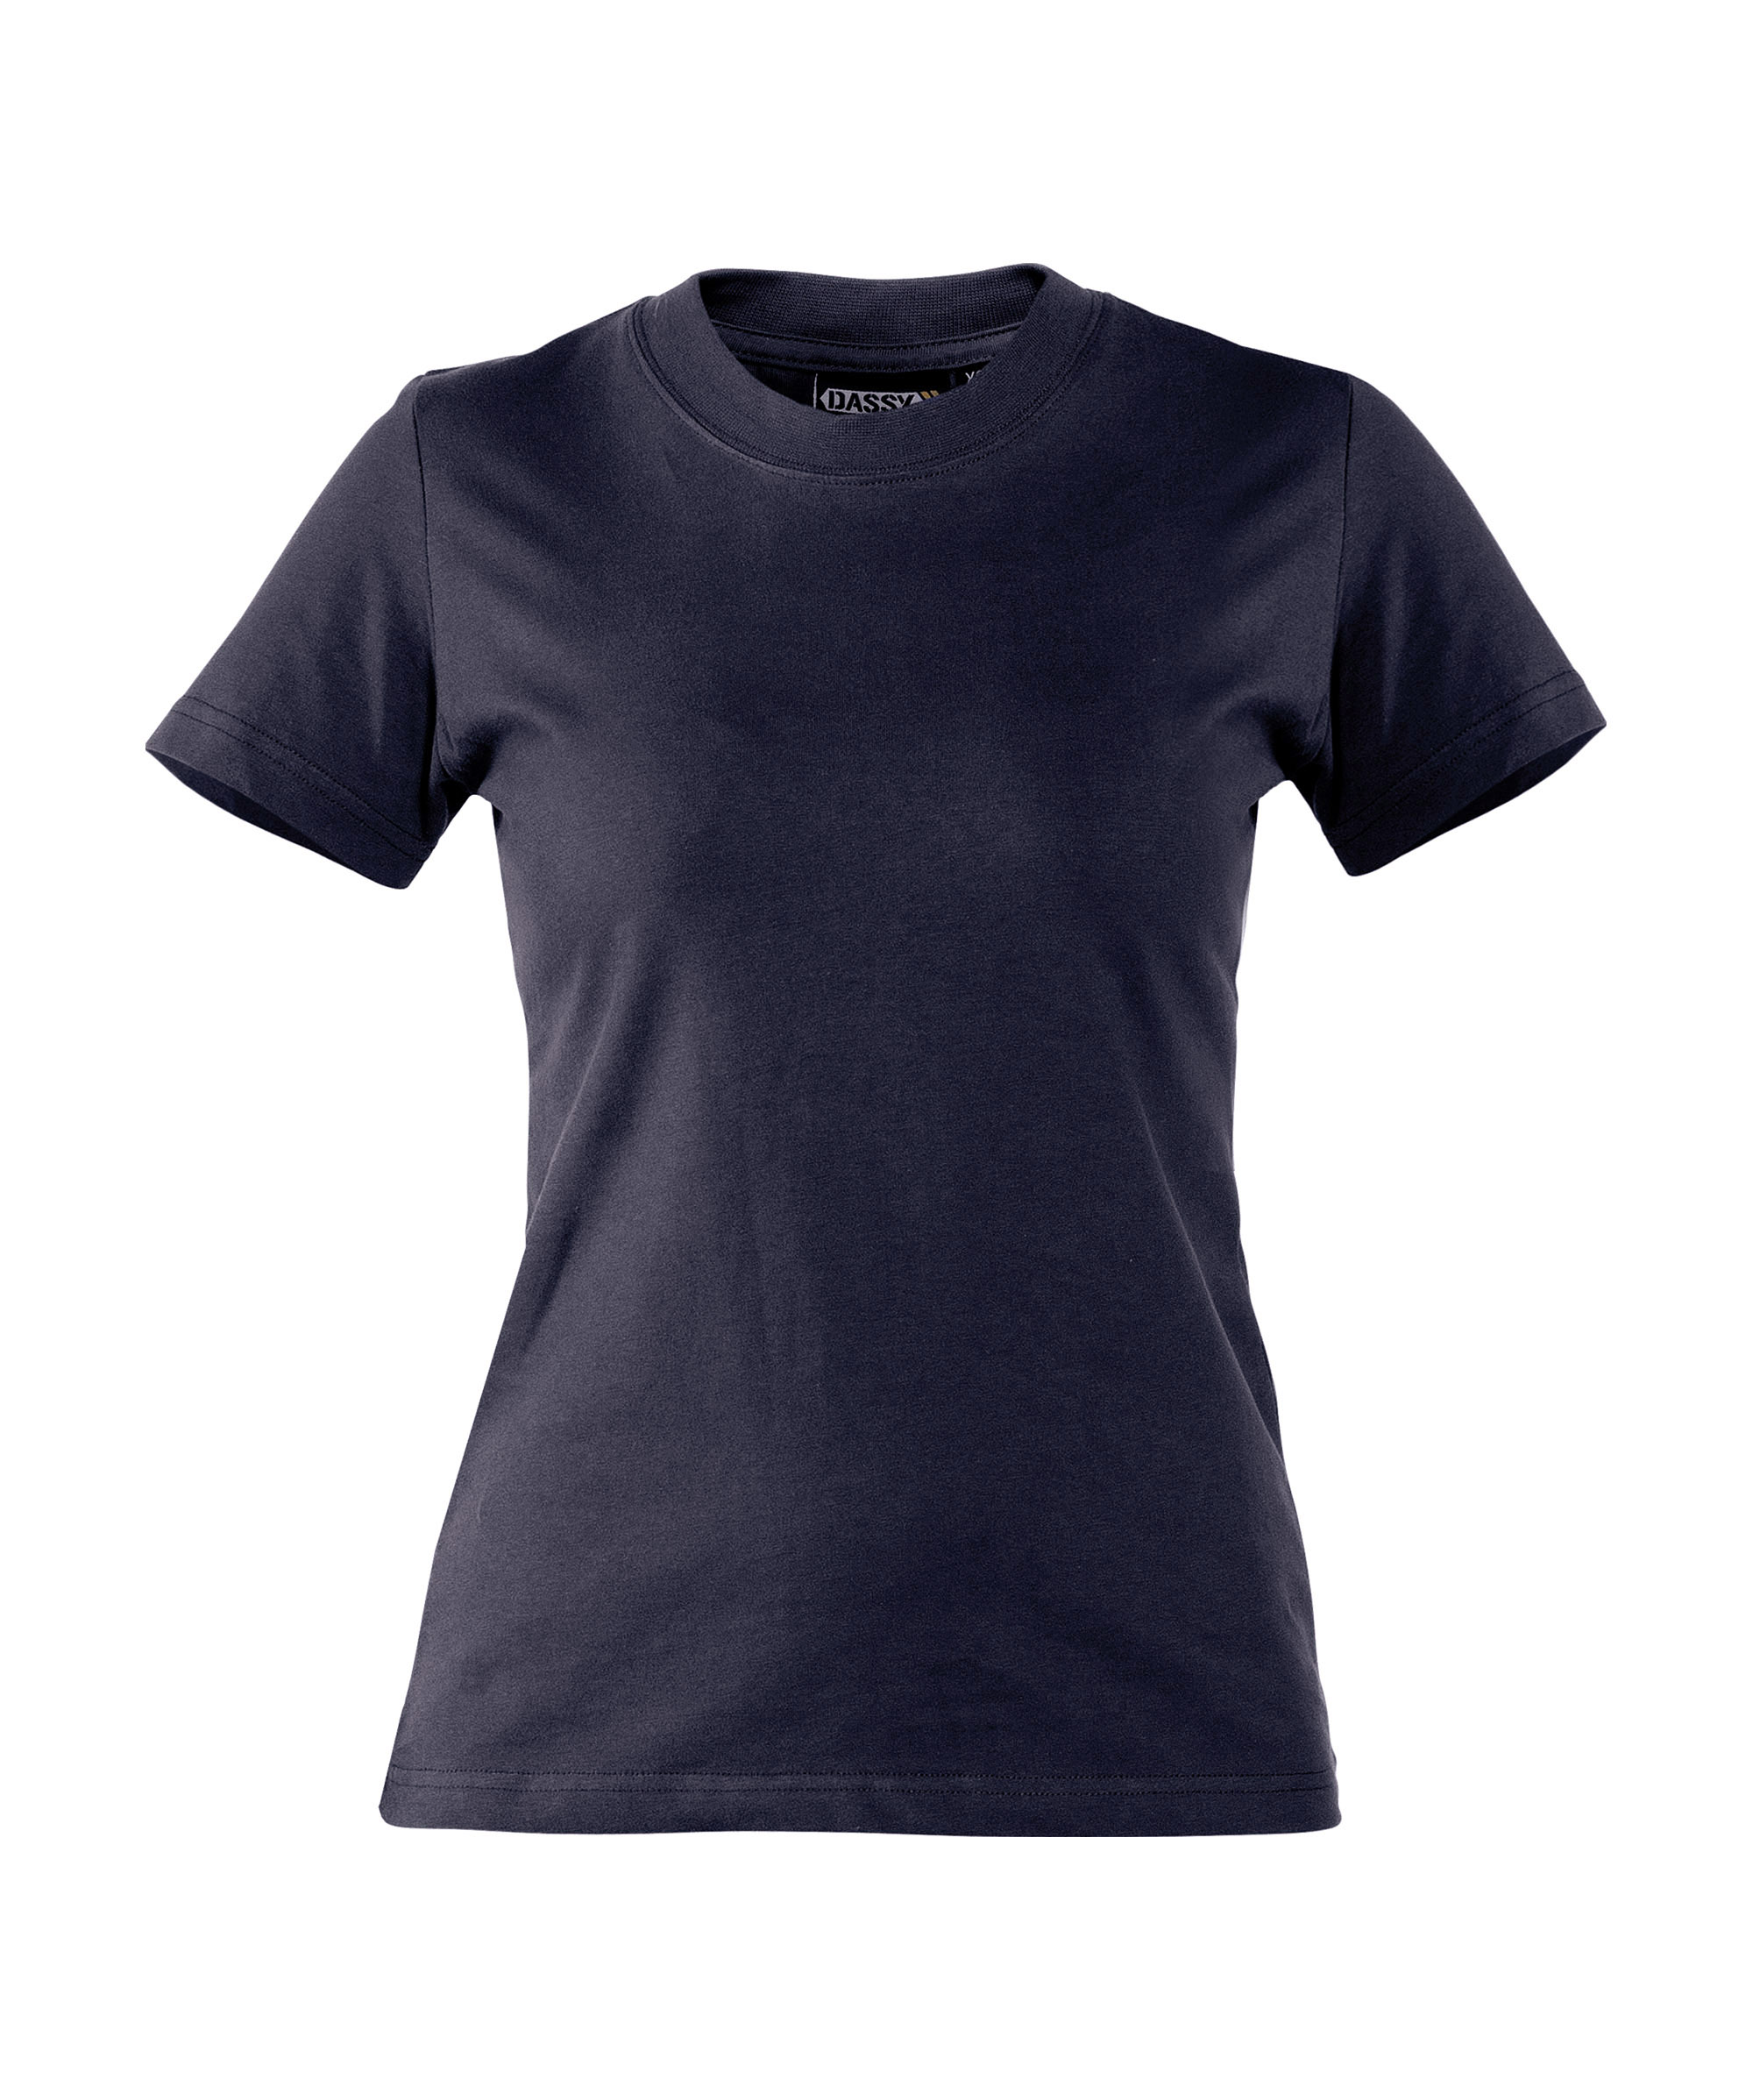 oscar-women_t-shirt_navy_front.jpg